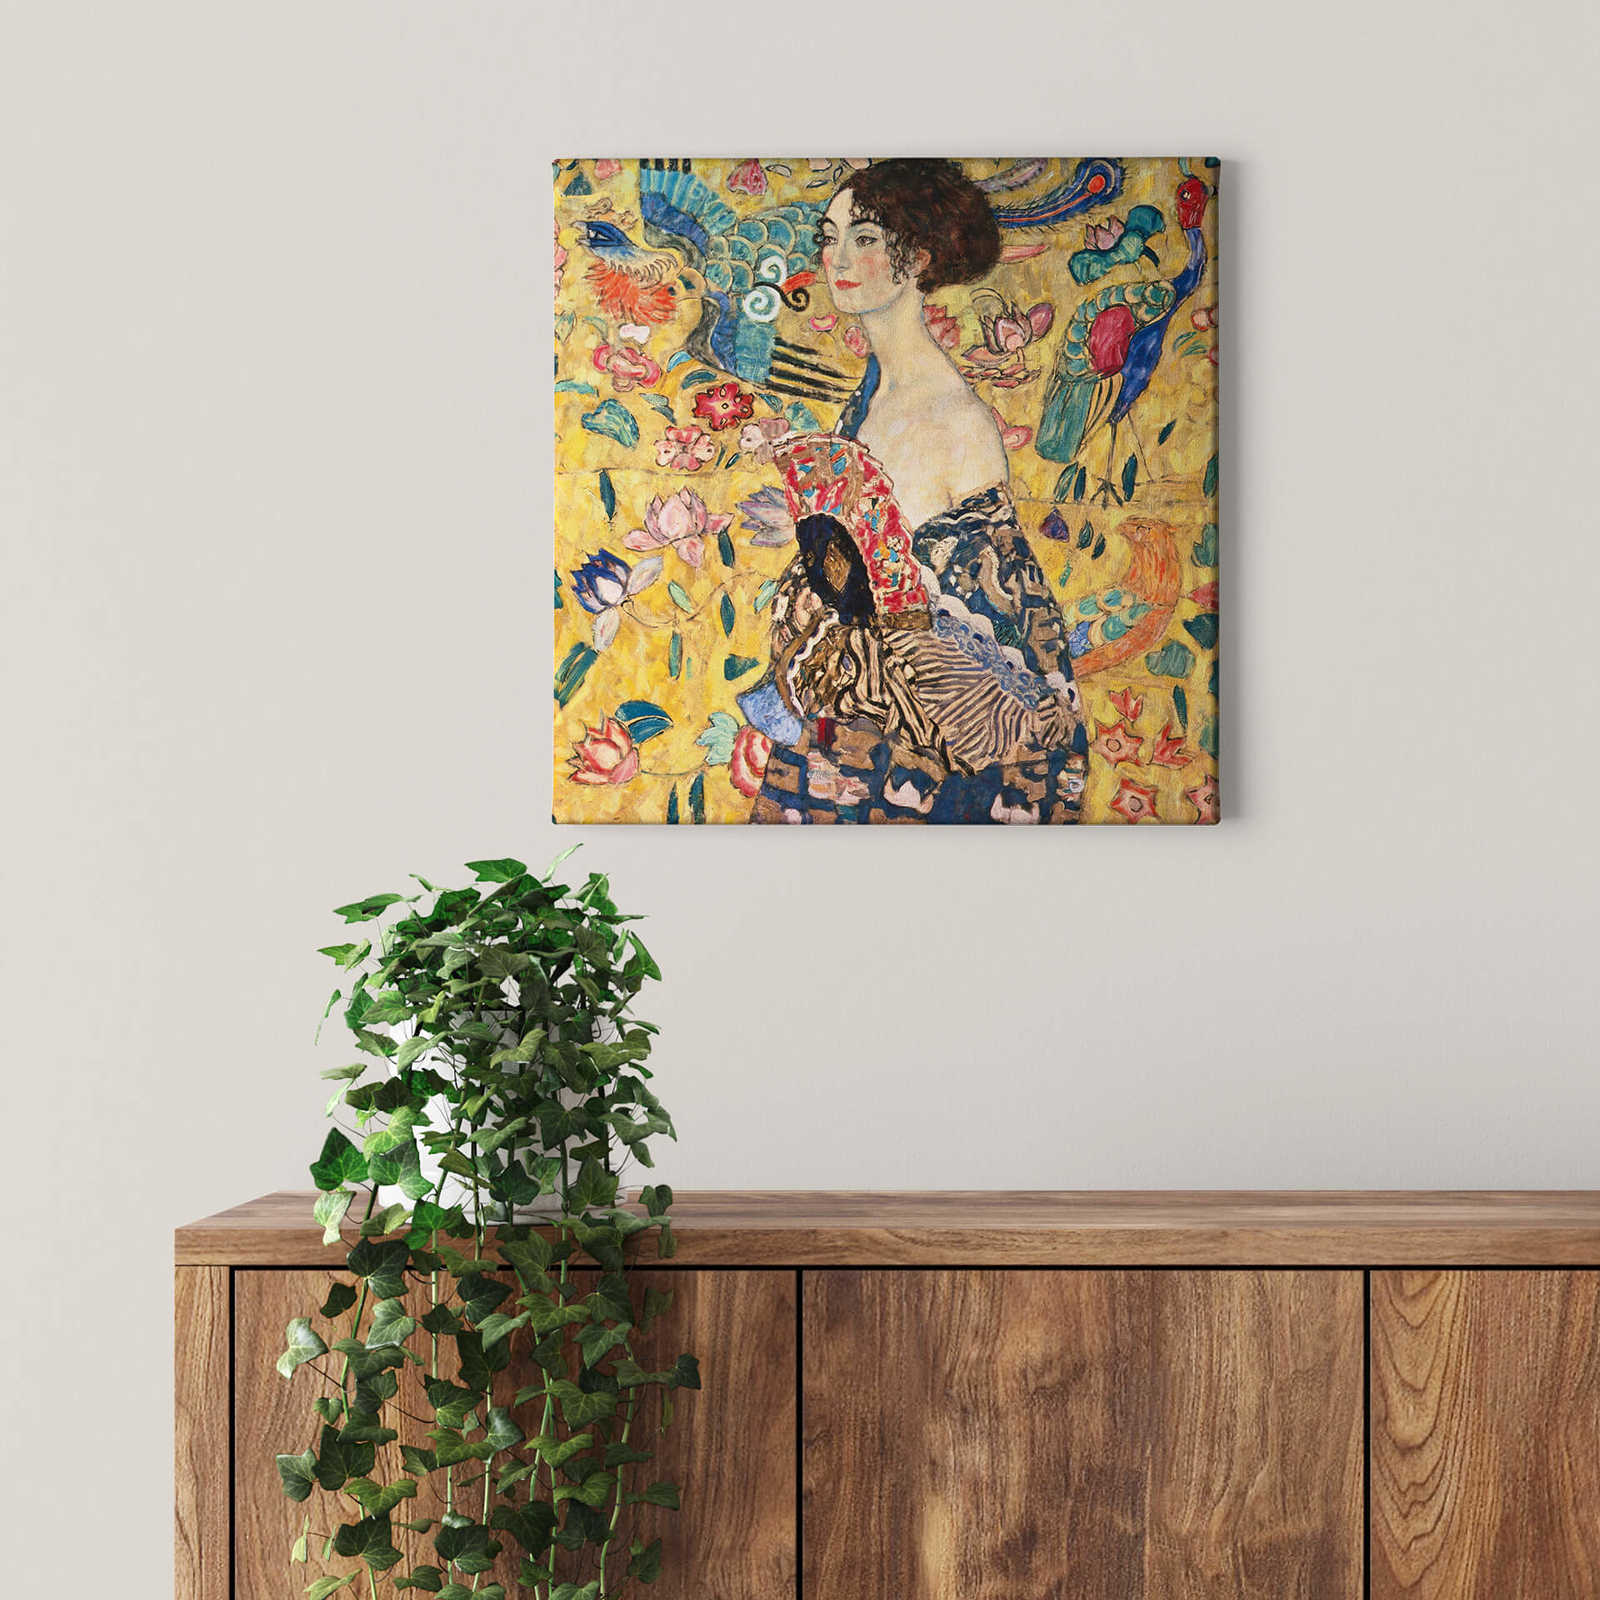             Quadratisches Leinwandbild "Dame mit Fächer" von Klimt – 0,50 m x 0,50 m
        